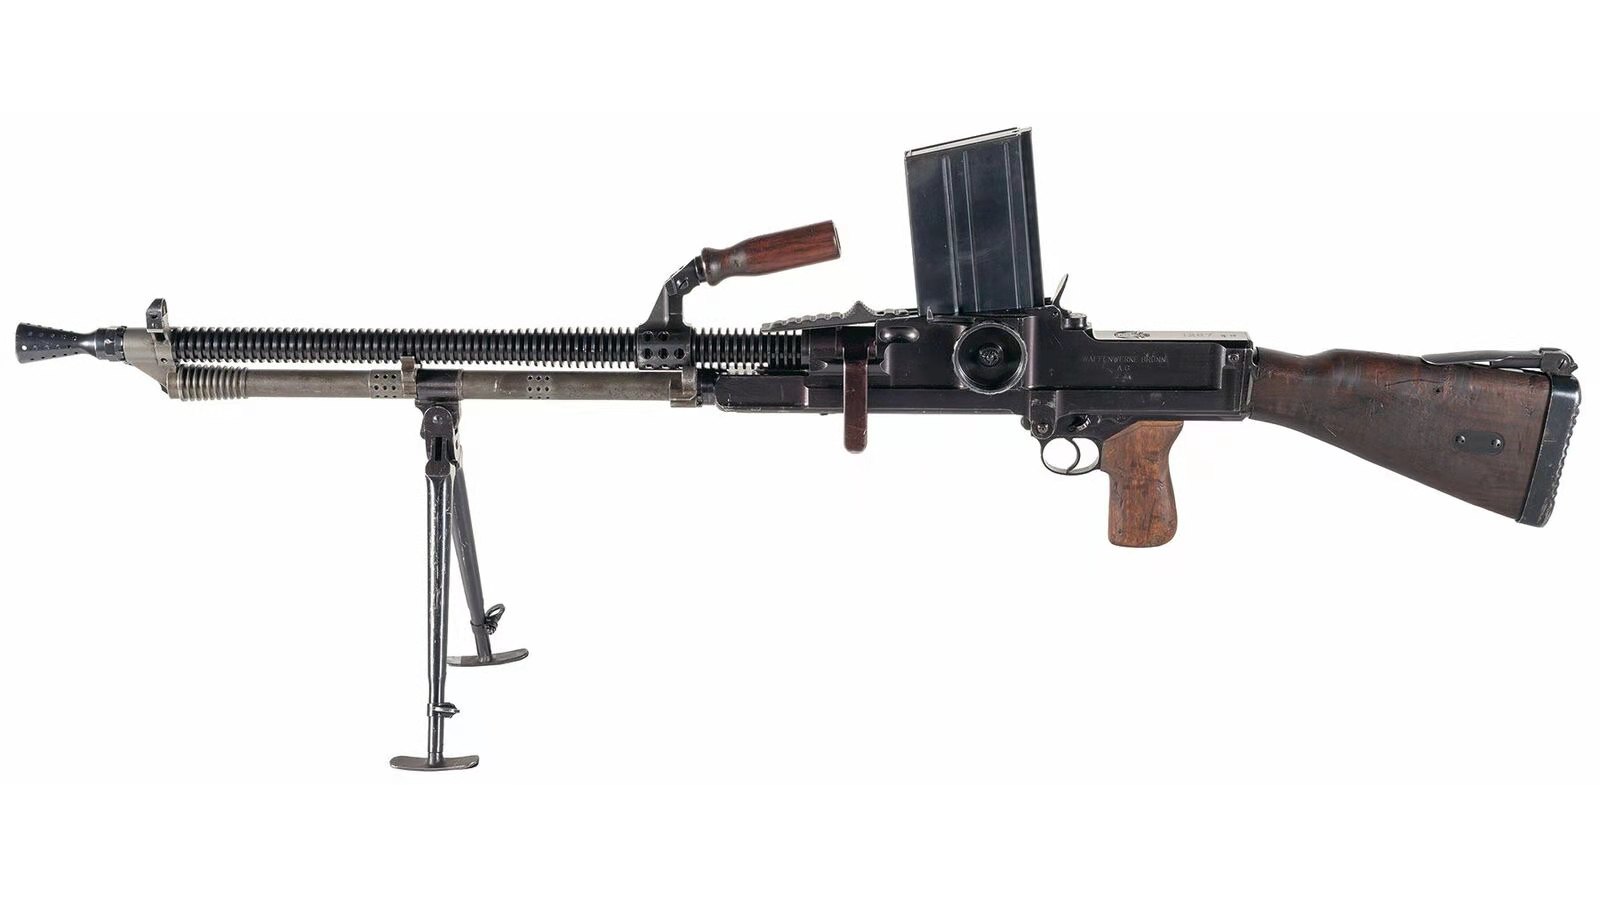 原创吊打日军的zb26轻机枪:弹匣到底是直的还是弯的?